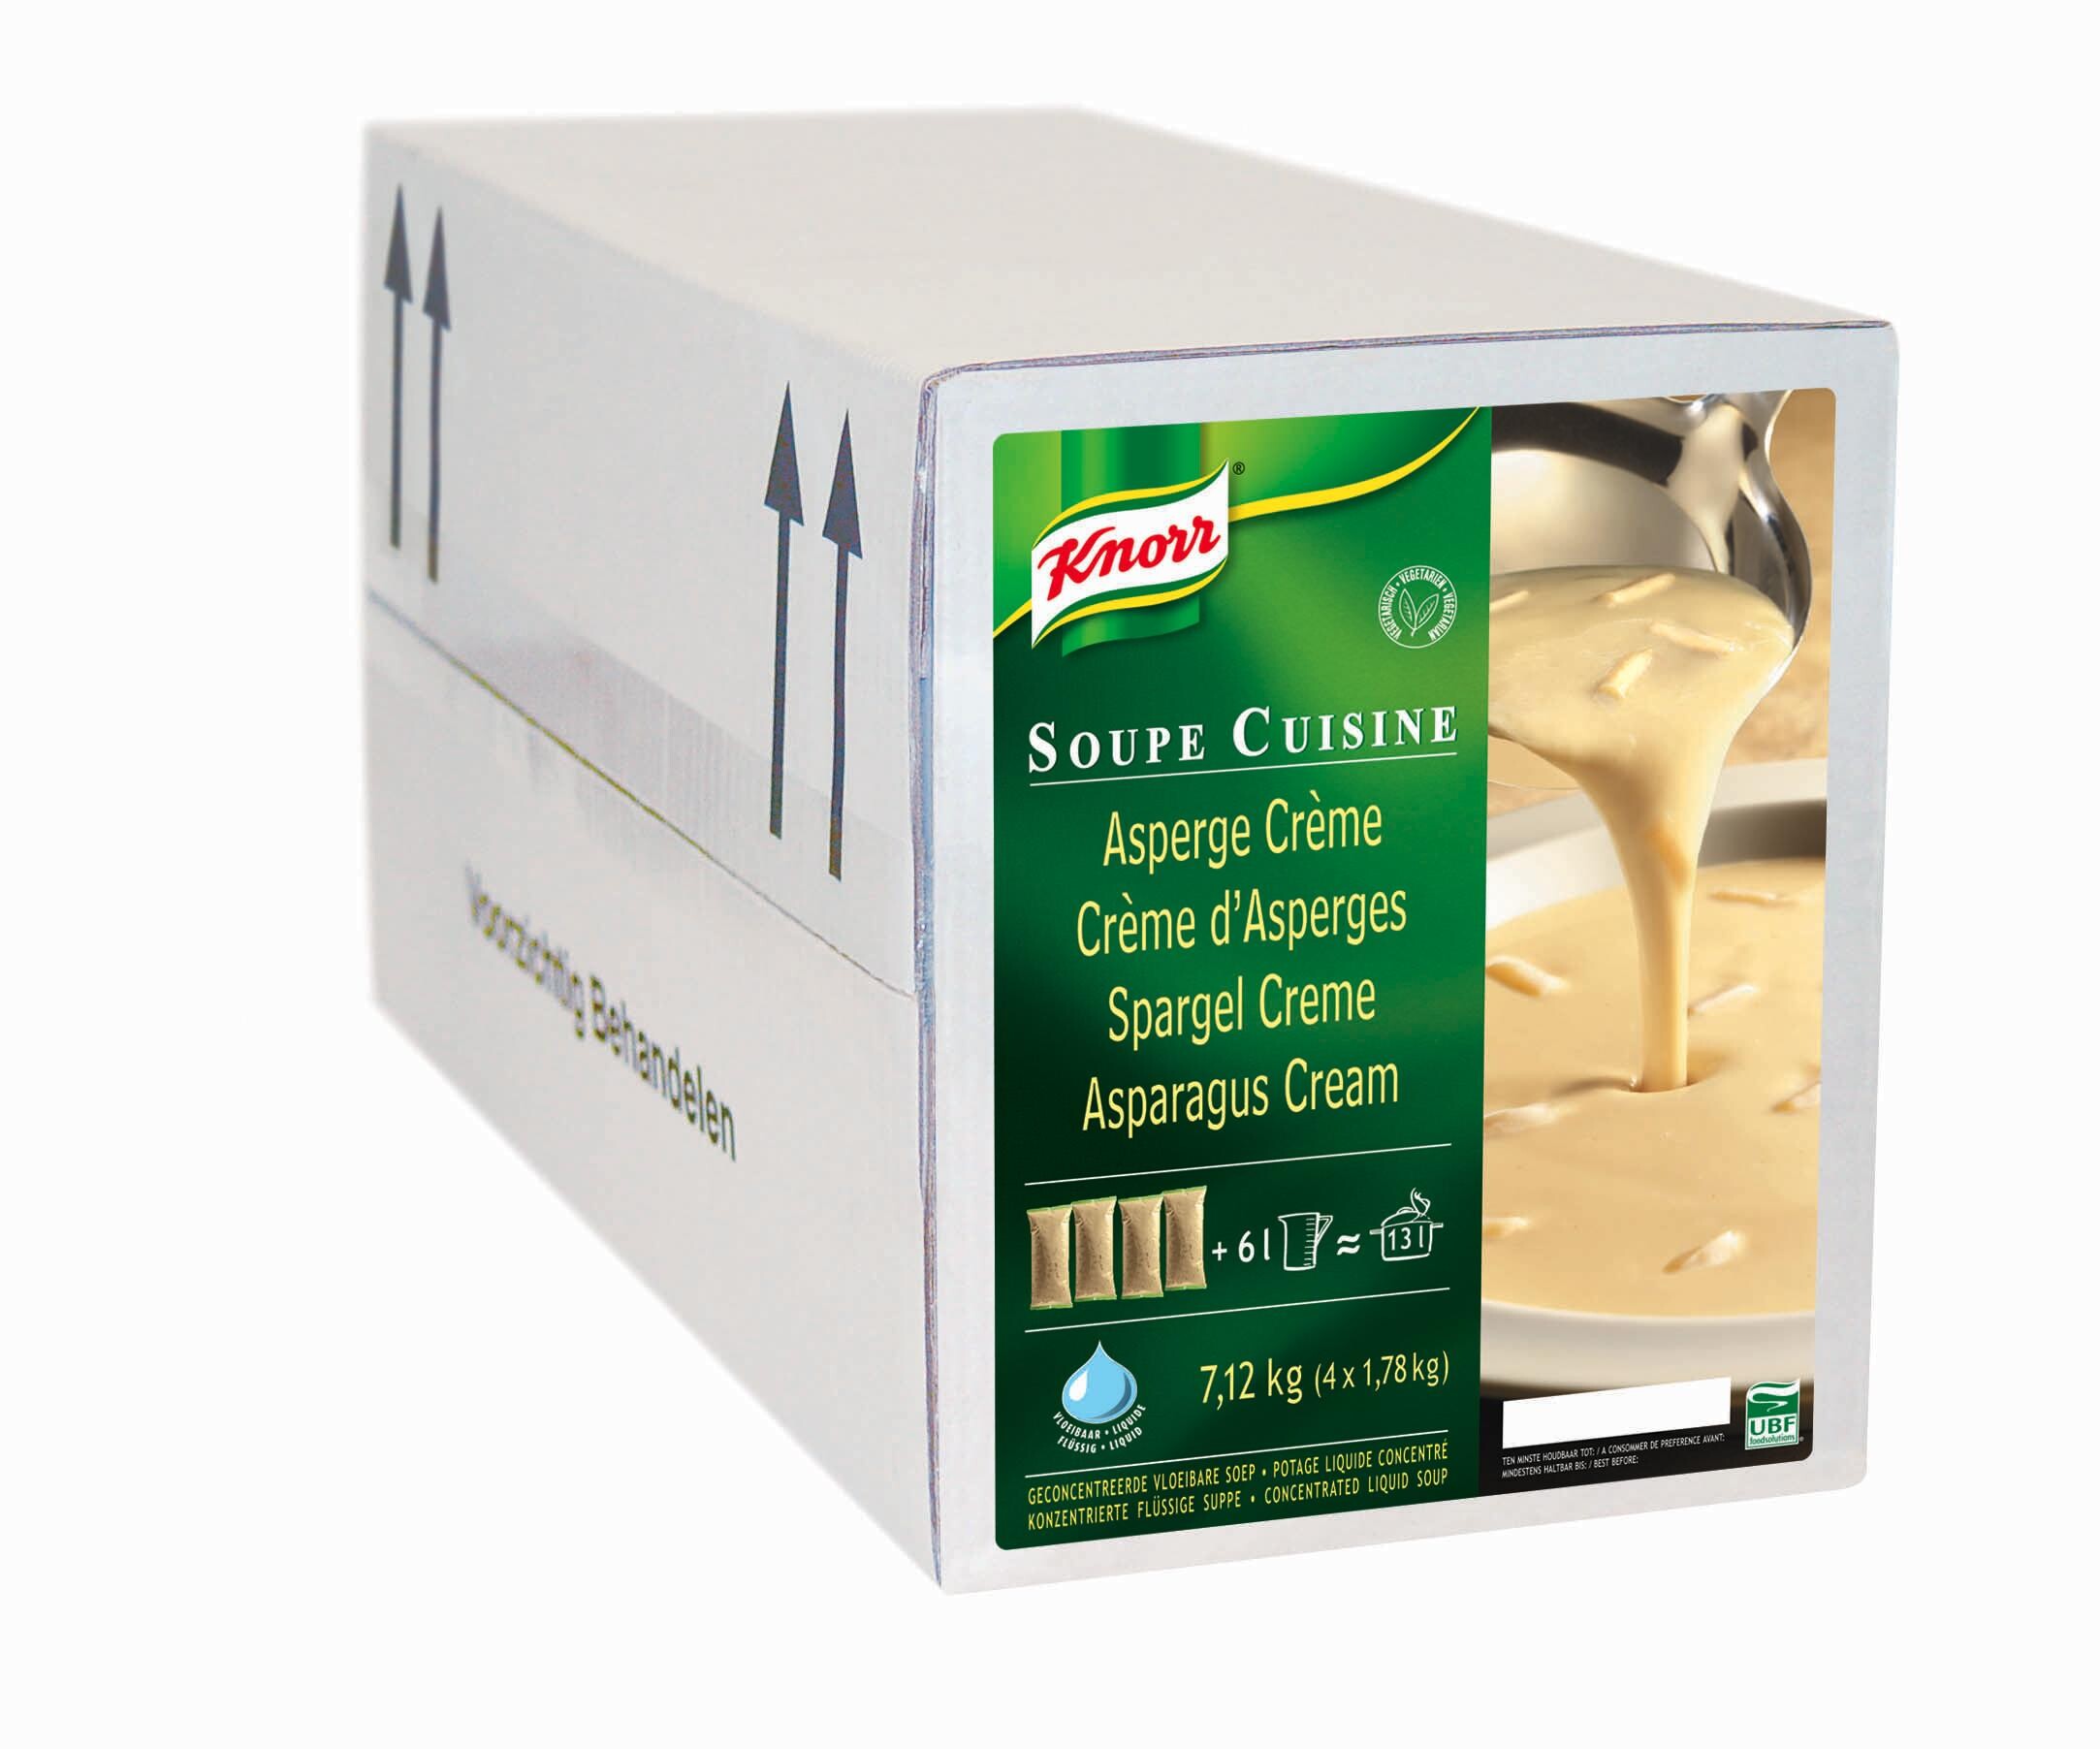 Knorr Soupe Cuisine Aspergecreme 4x2kg